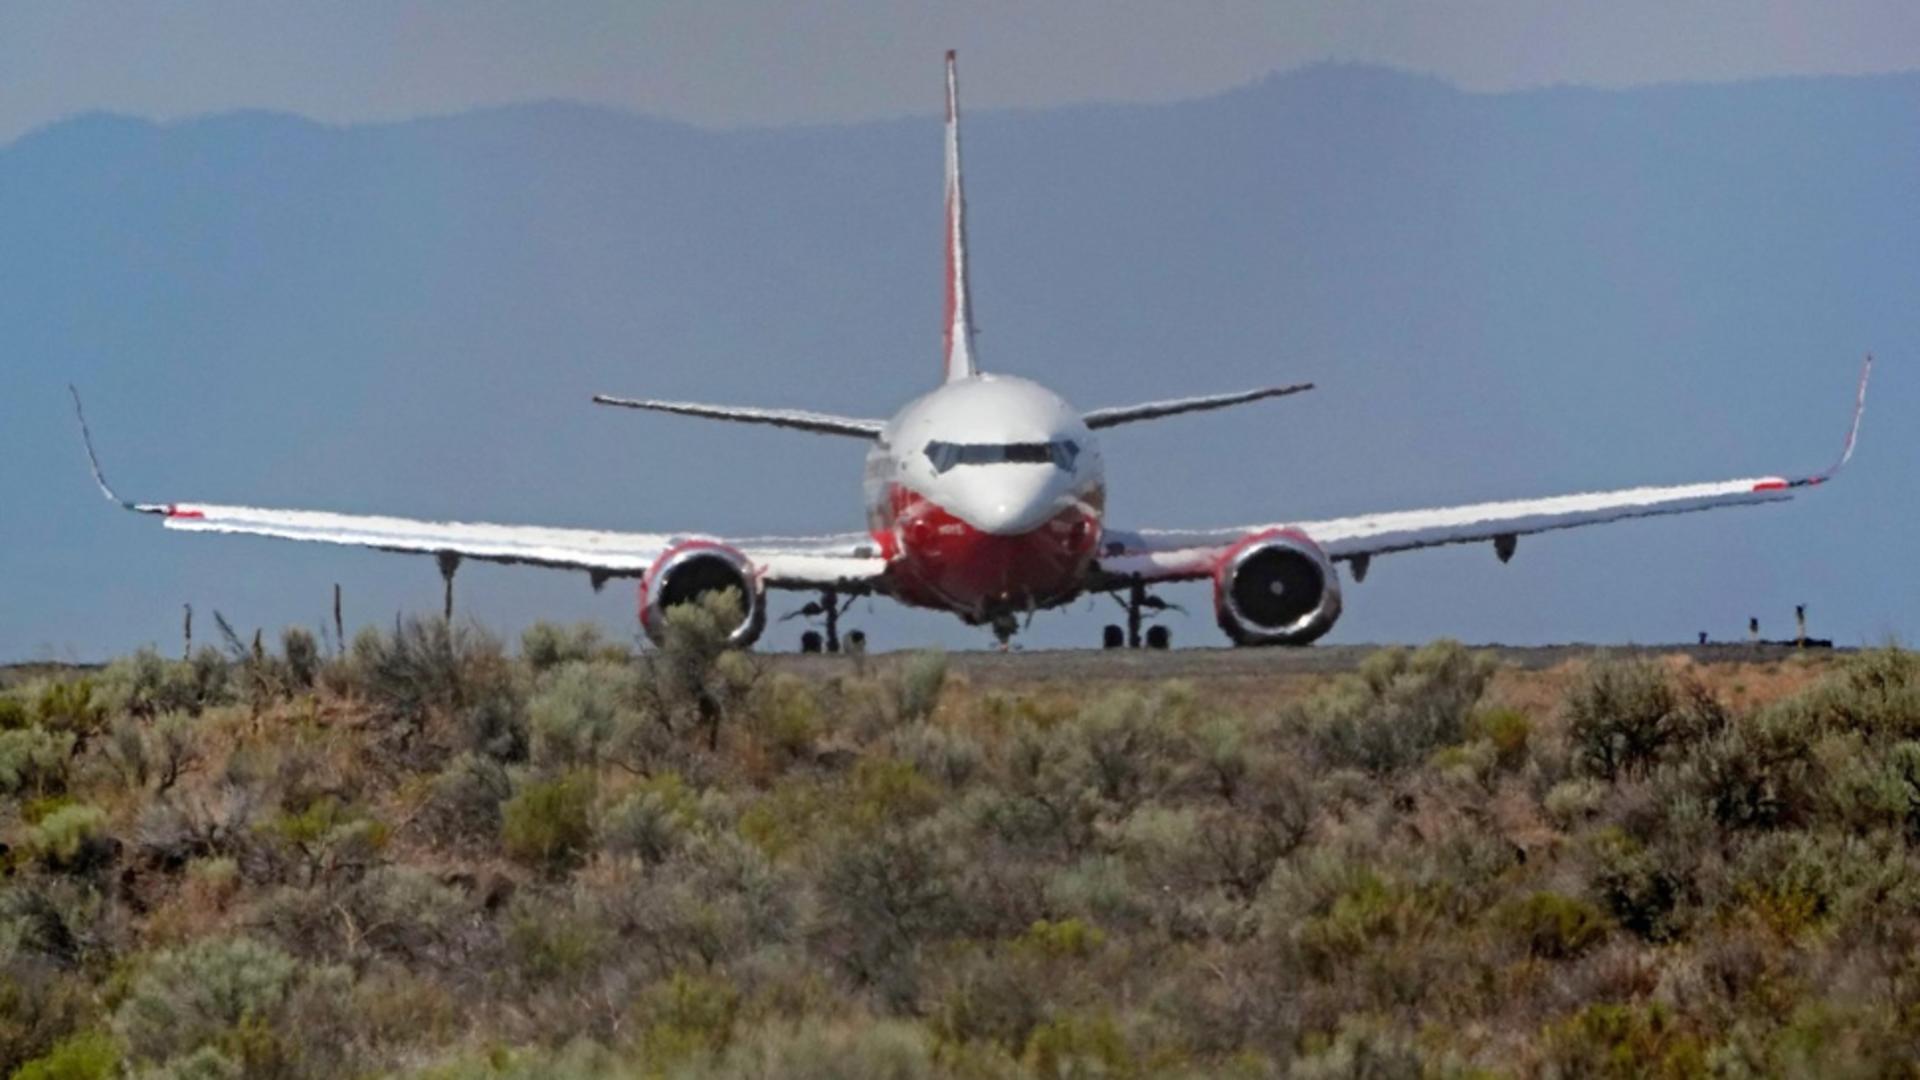 Tragedie aviatică: un Boeing 737 s-a prăbușit în Australia / Foto: Profi Media